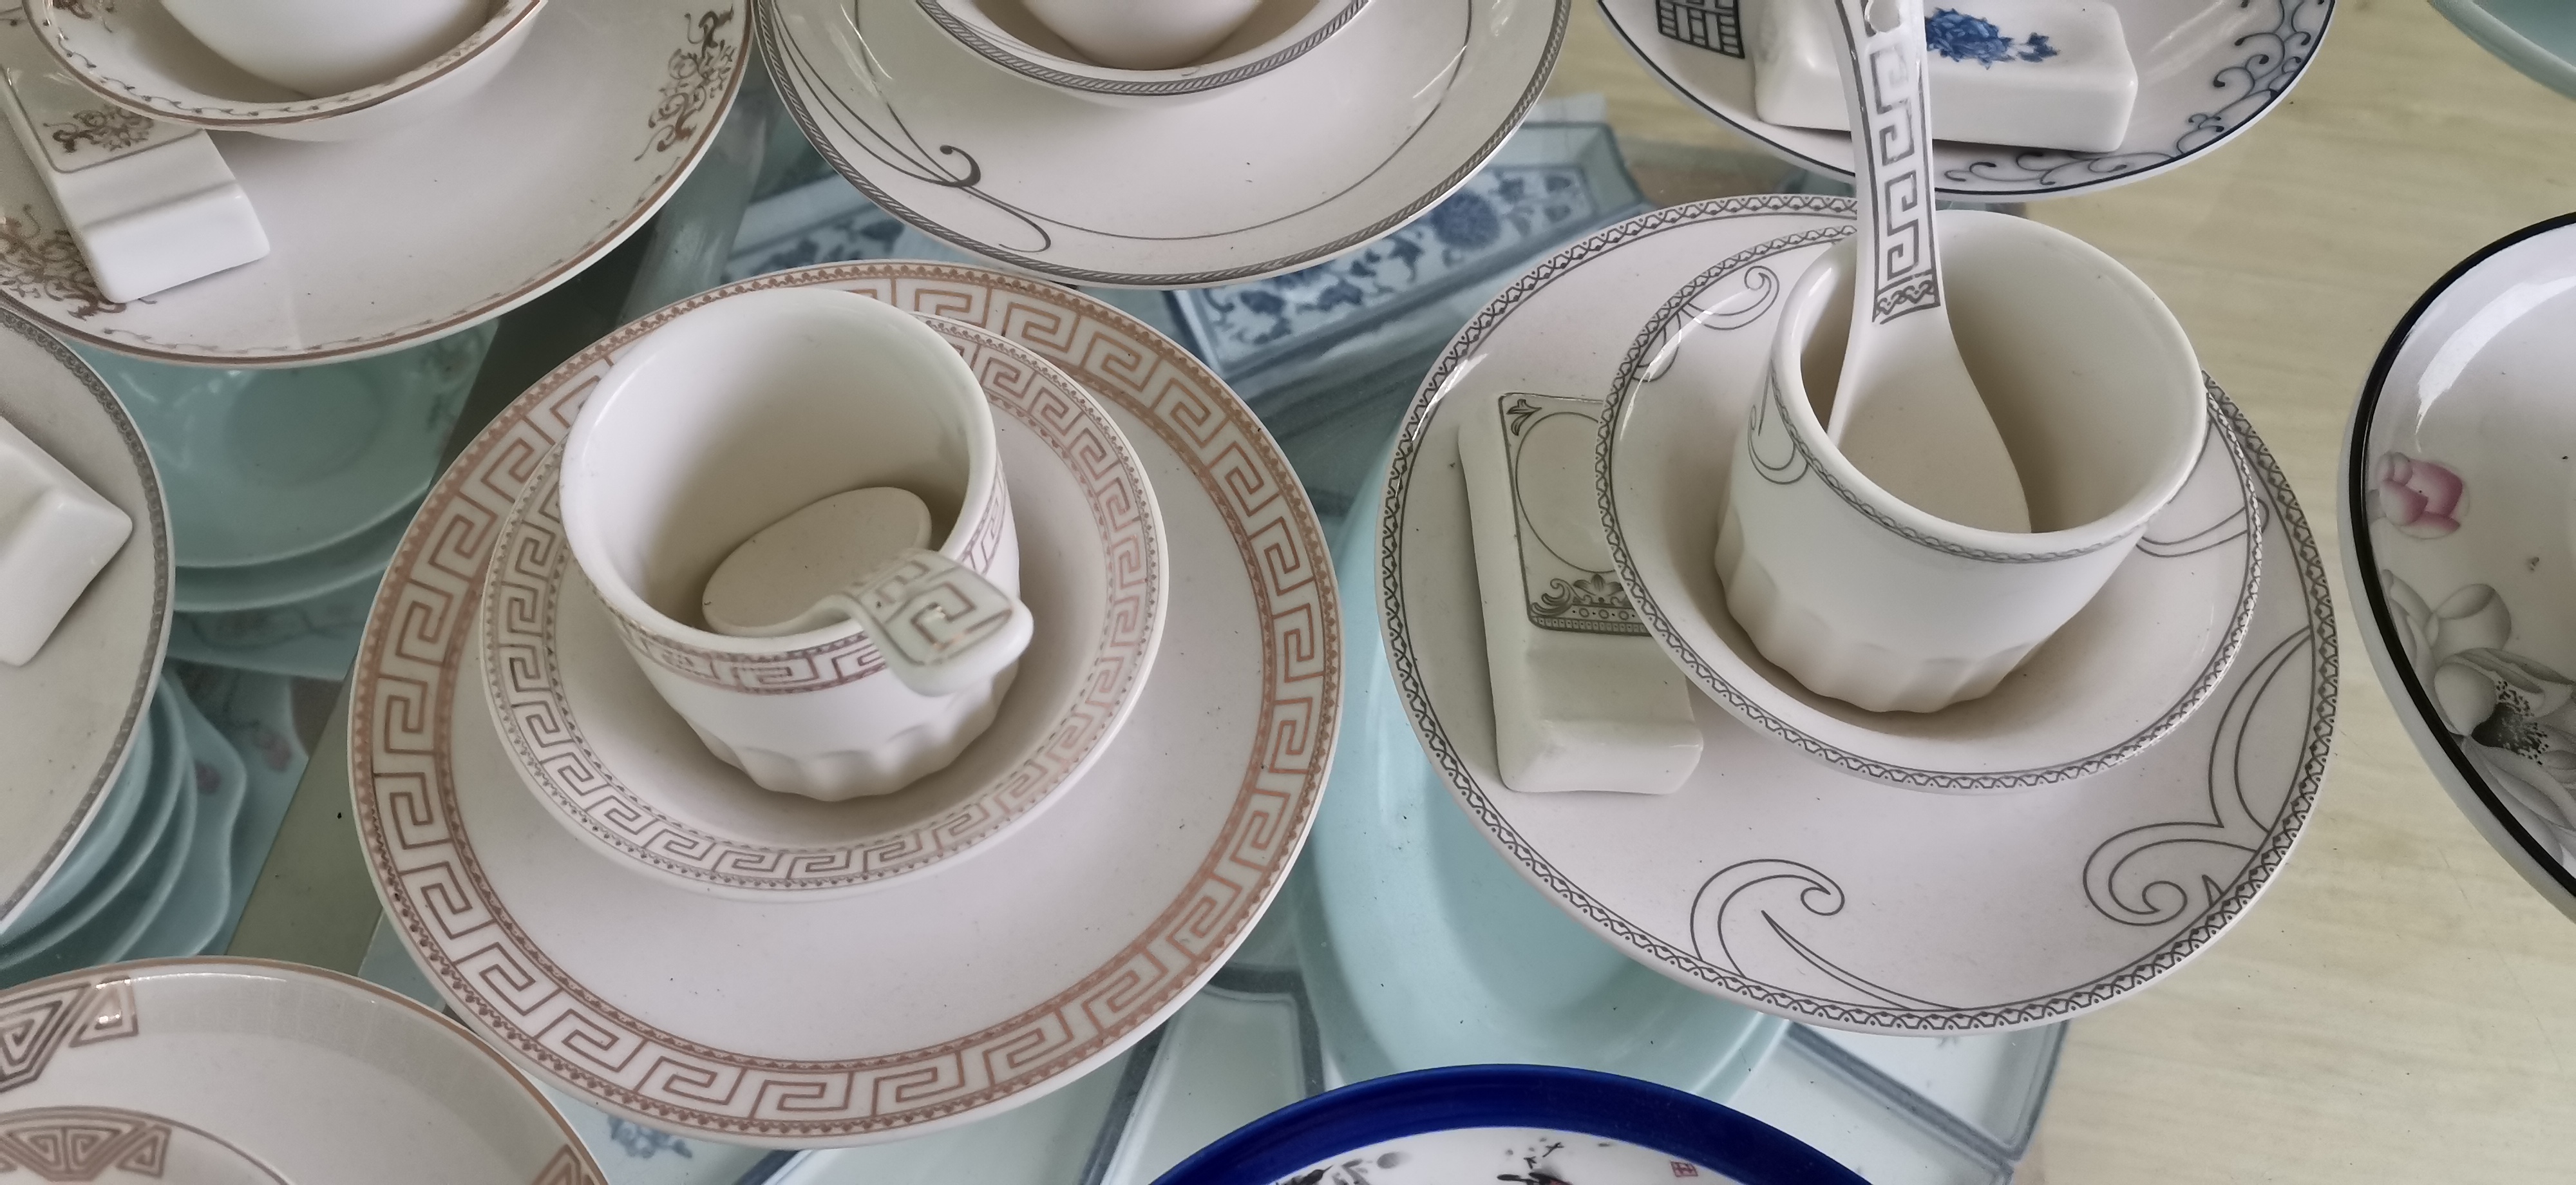 陶瓷四件套餐具价格 亮丽陶瓷小时代中式餐具厂家定做